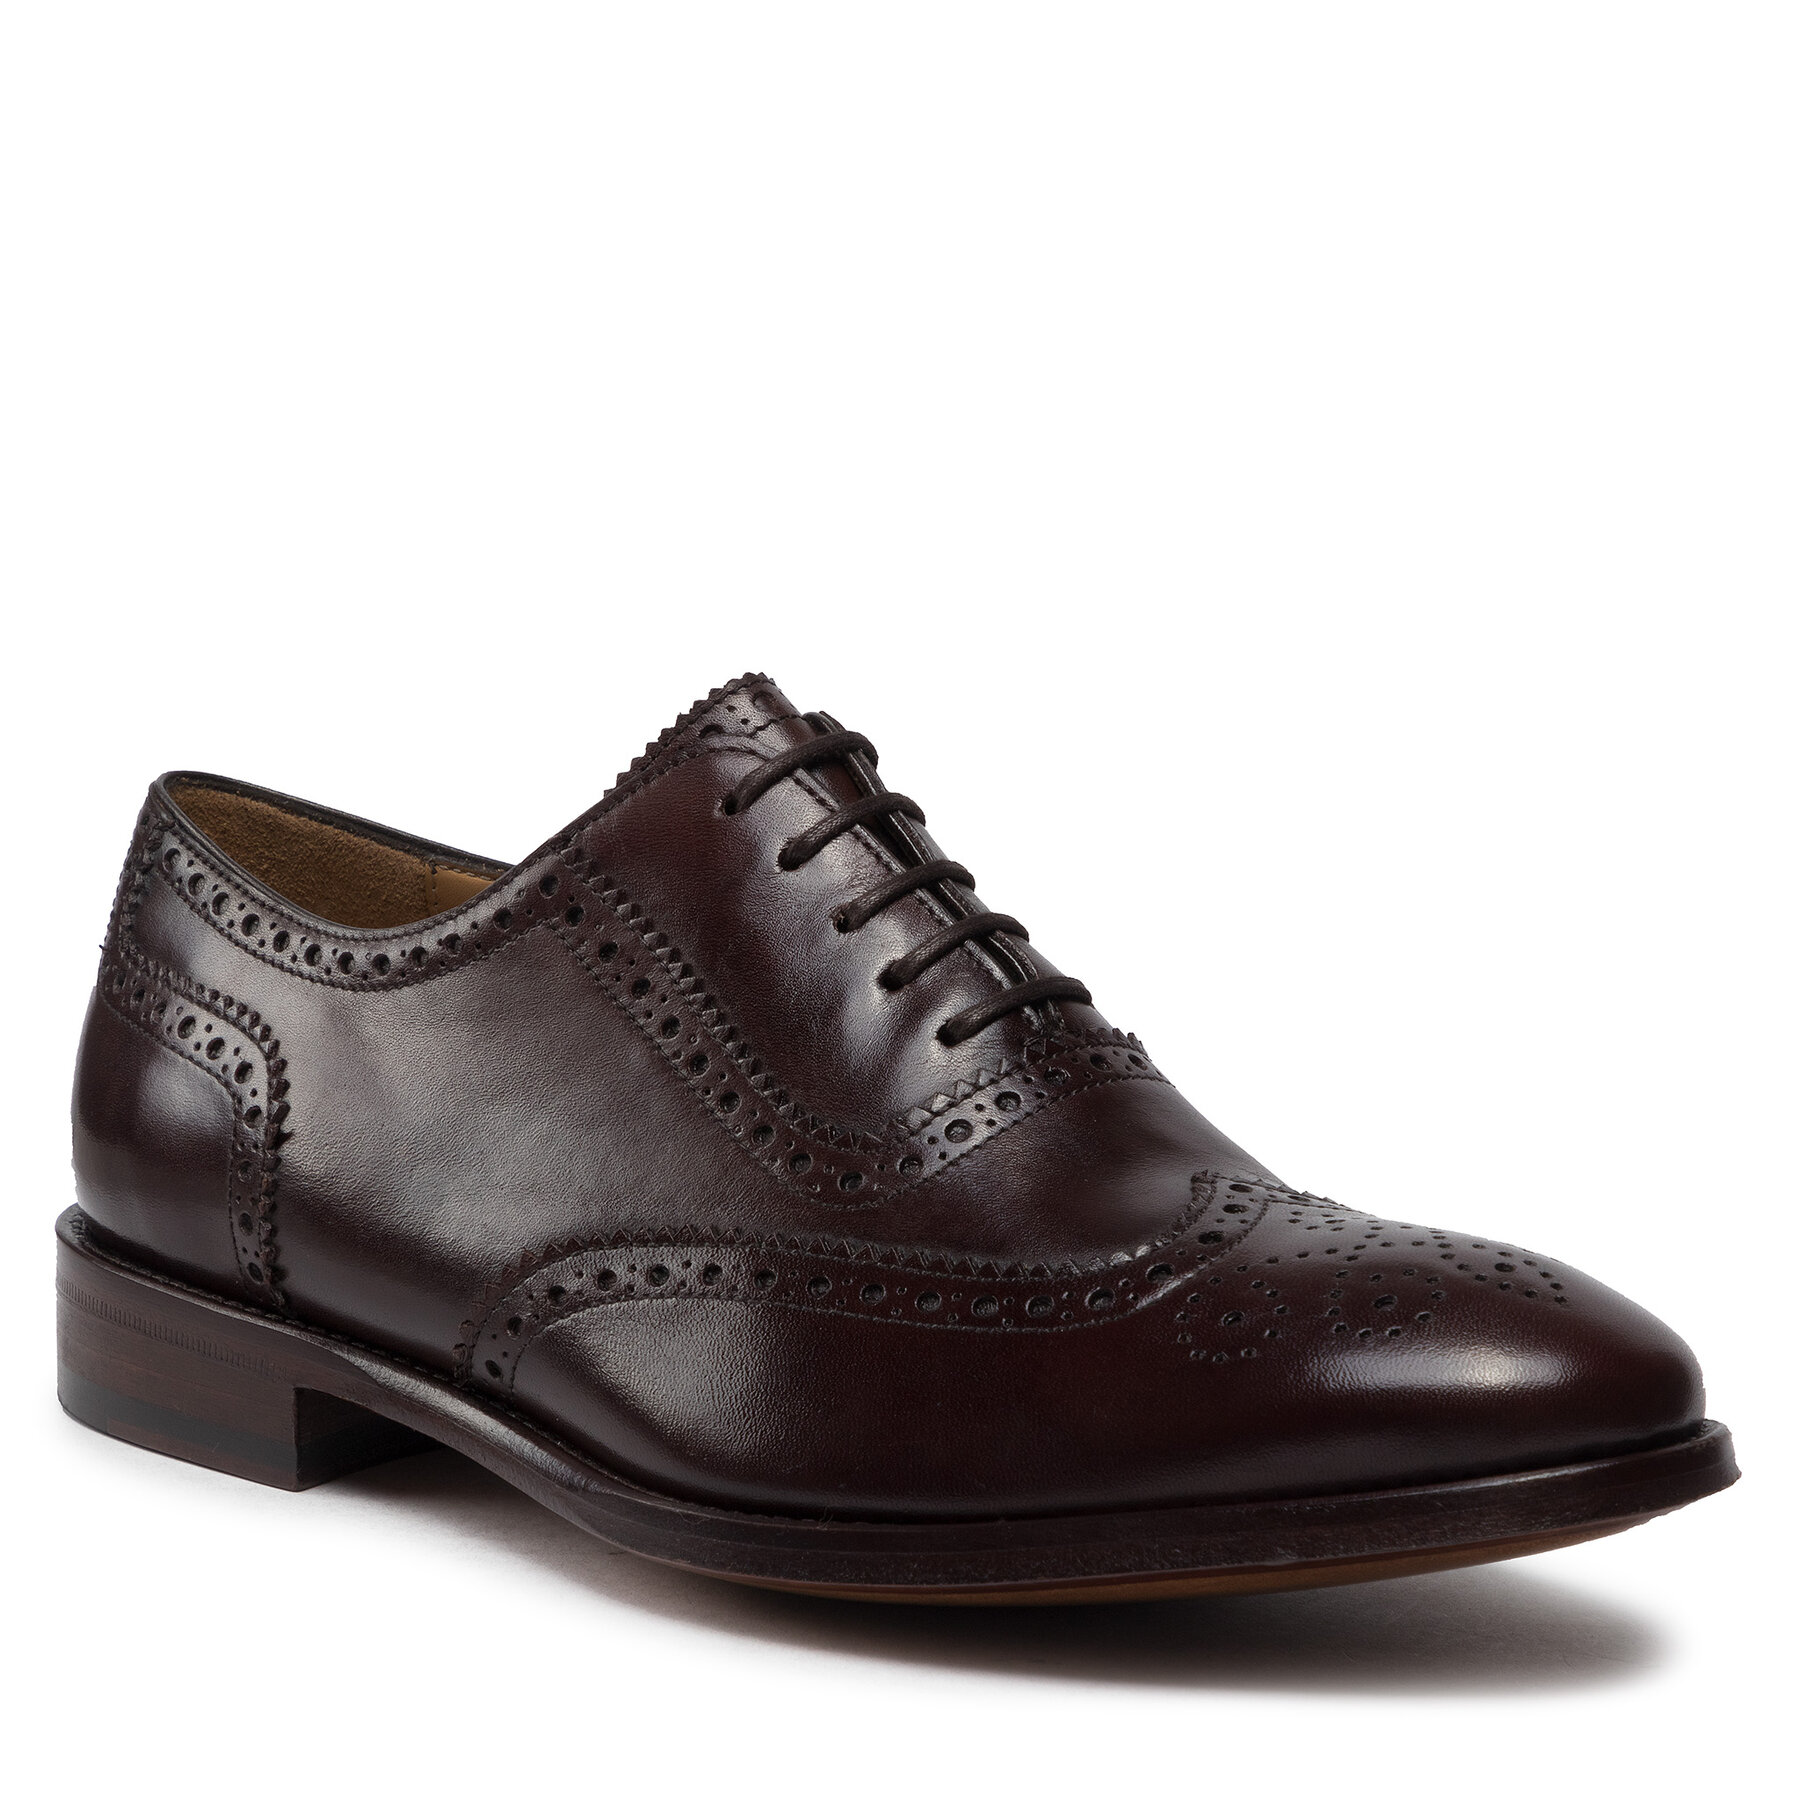 Pantofi Lord Premium Brogues 5501 Middle Brown L06 5501 imagine 2022 reducere